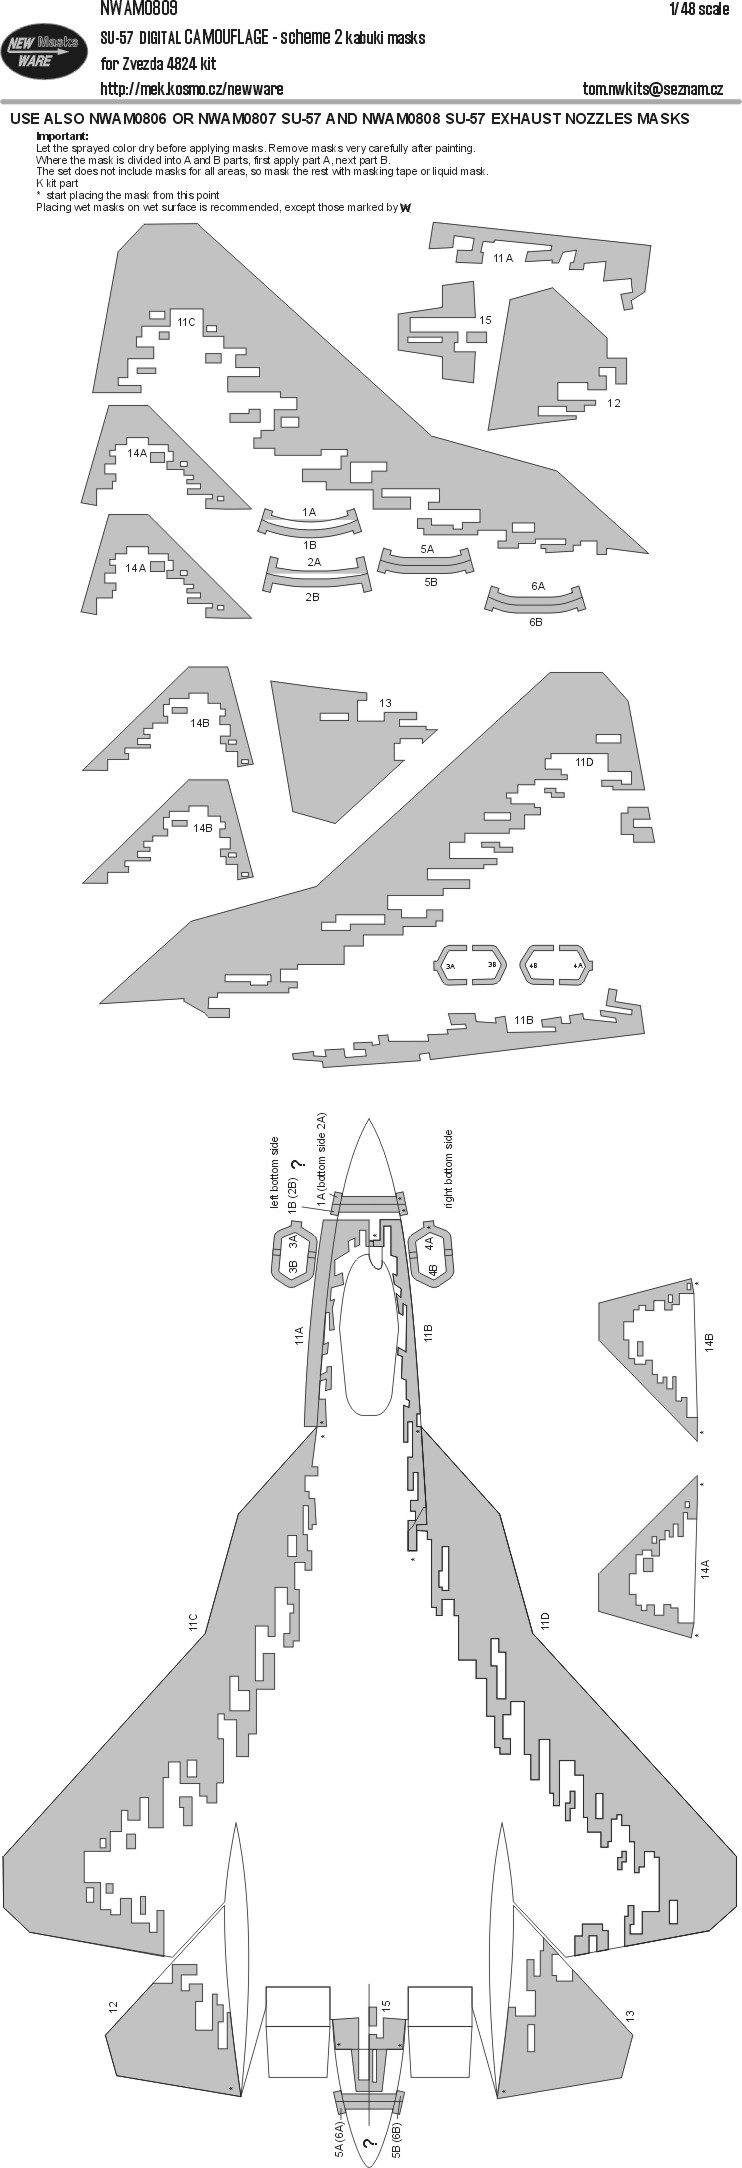 1/48 Mask Su-57 DIG.CAMOUFLAGE scheme 2 (ZVE 4824)